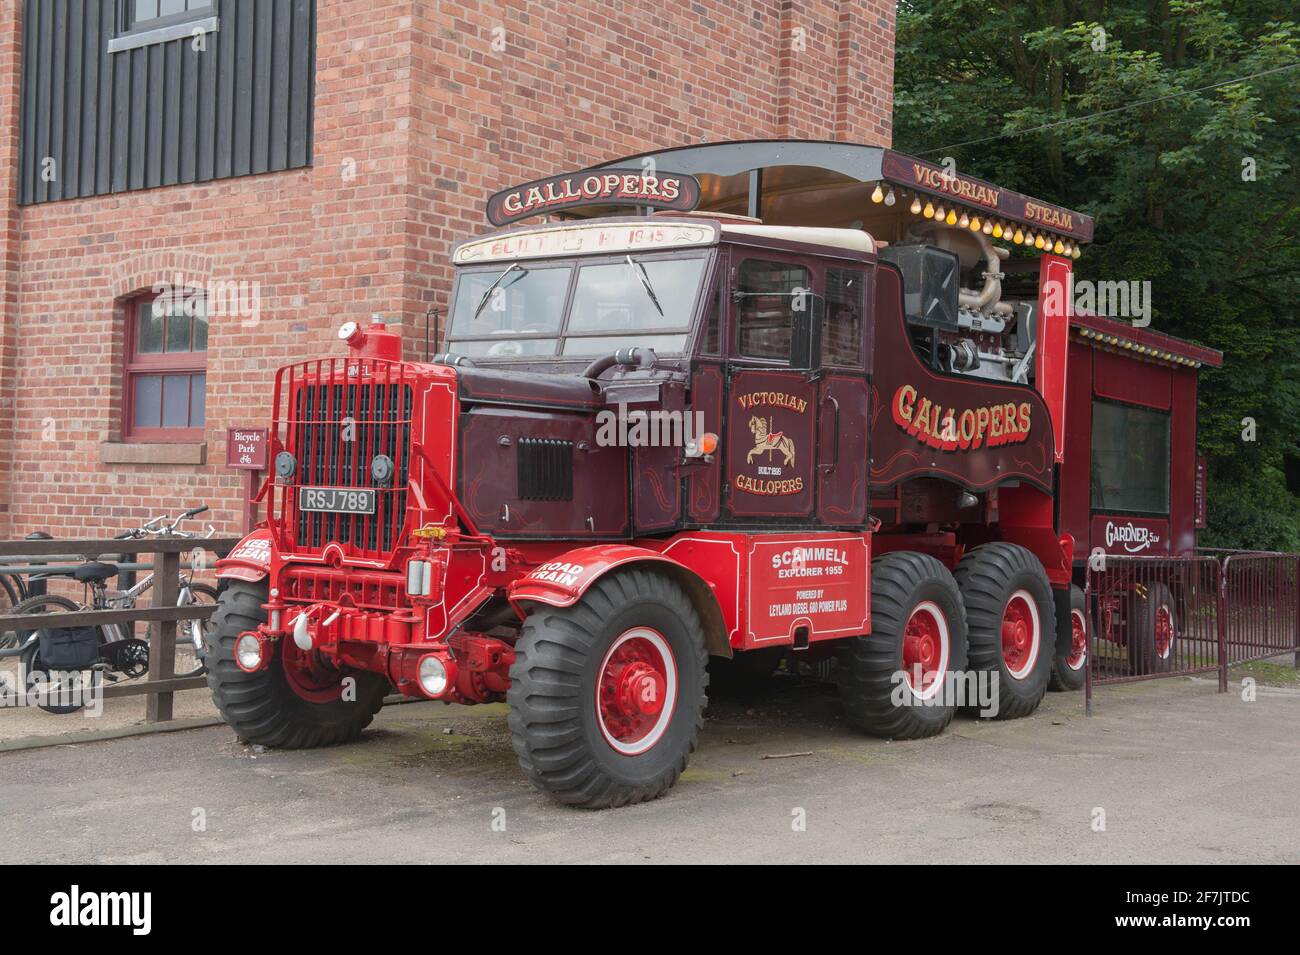 Scammell Explorer camion che ospita un generatore di vapore per l'attrazione vittoriana Gallopers Fairground al parco di Baton in Rural Cheshire, Inghilterra, Regno Unito Foto Stock